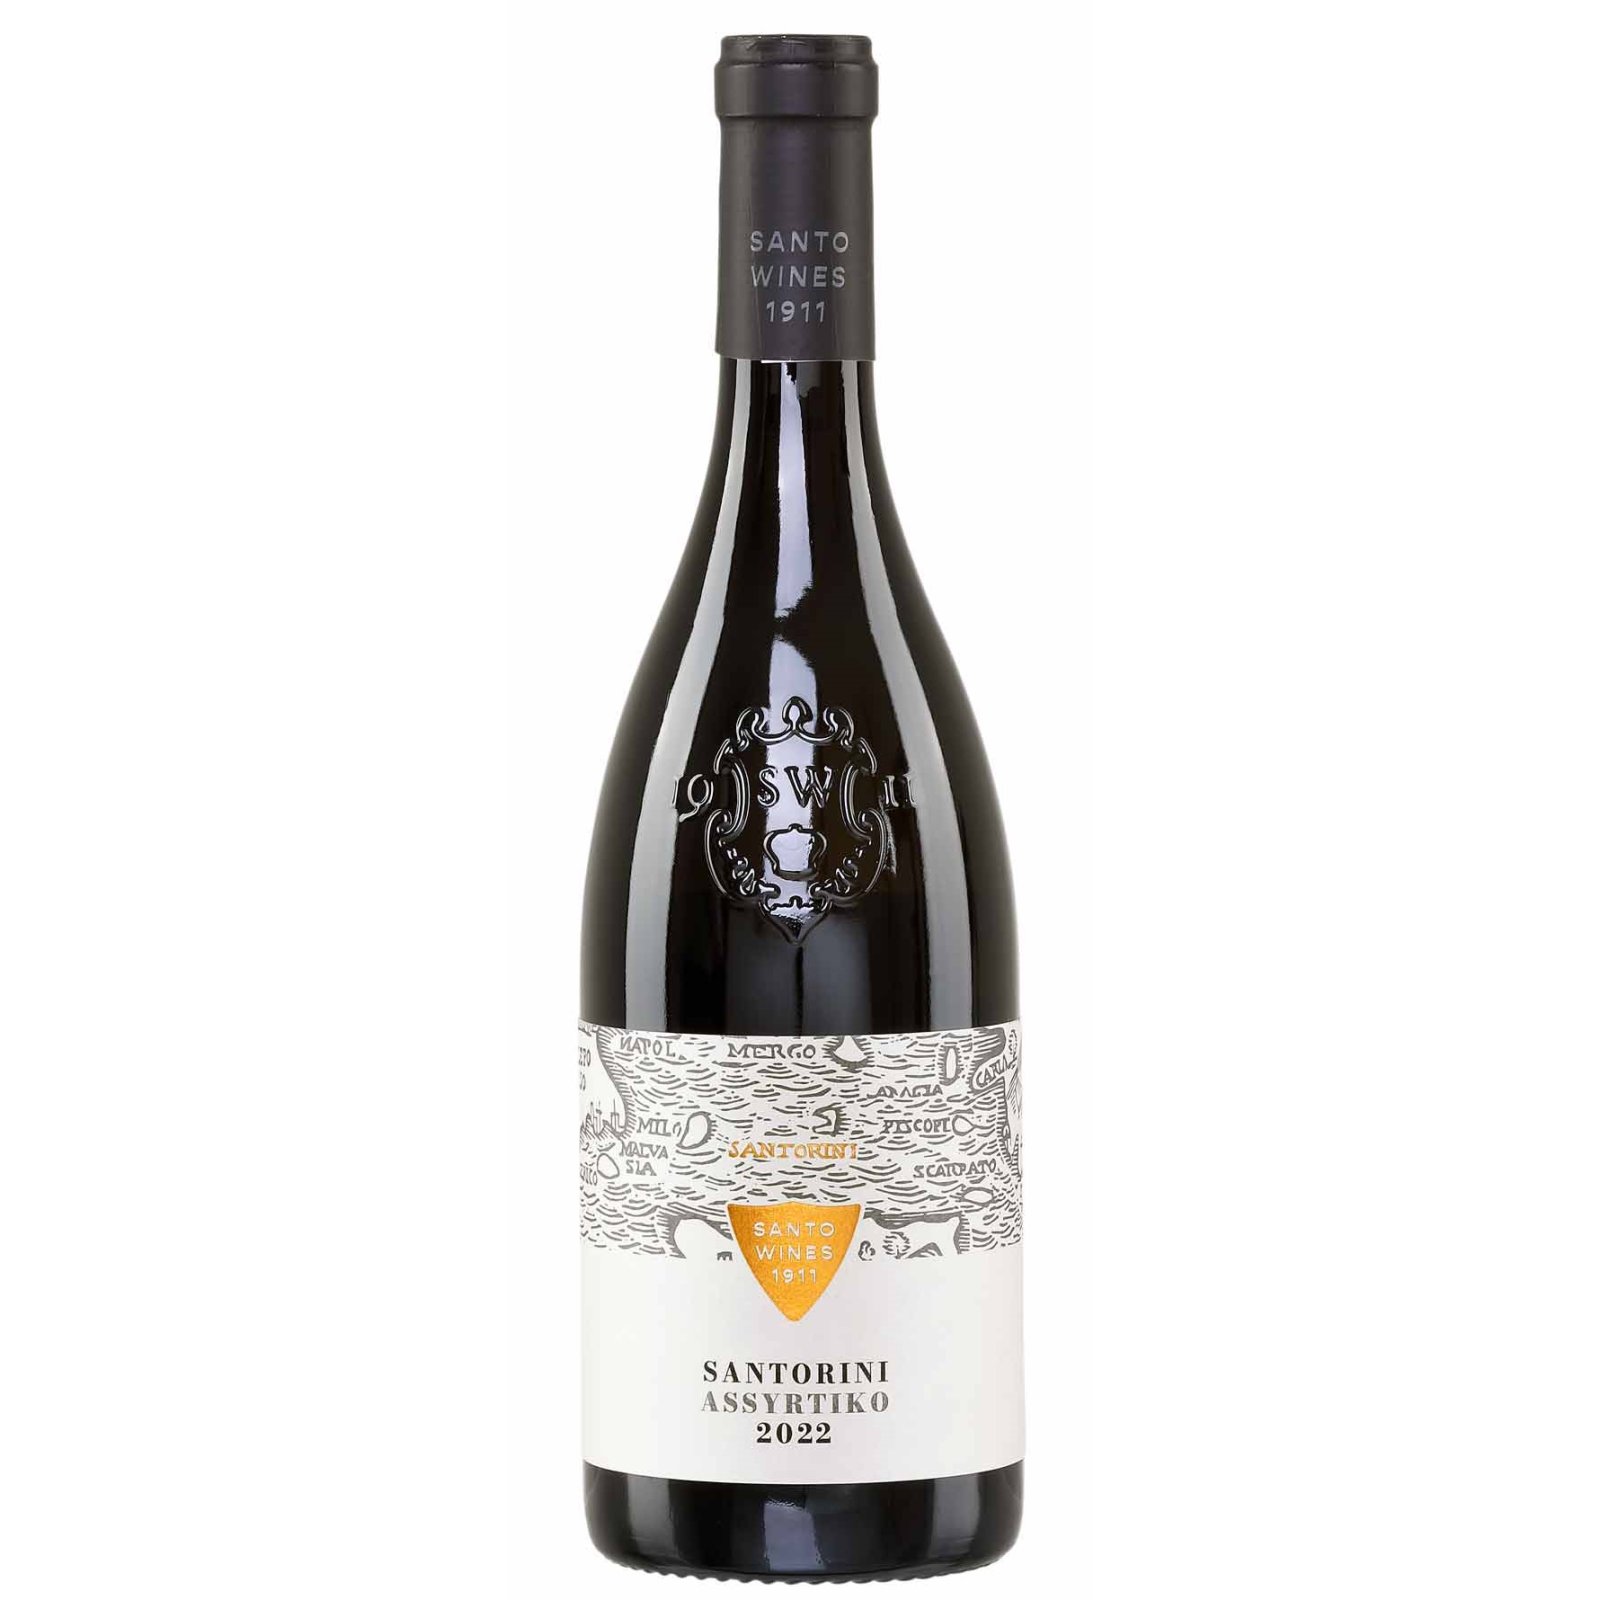 20,99 Weißwein Santo Wines Assyrtiko € Santorini kaufen, von